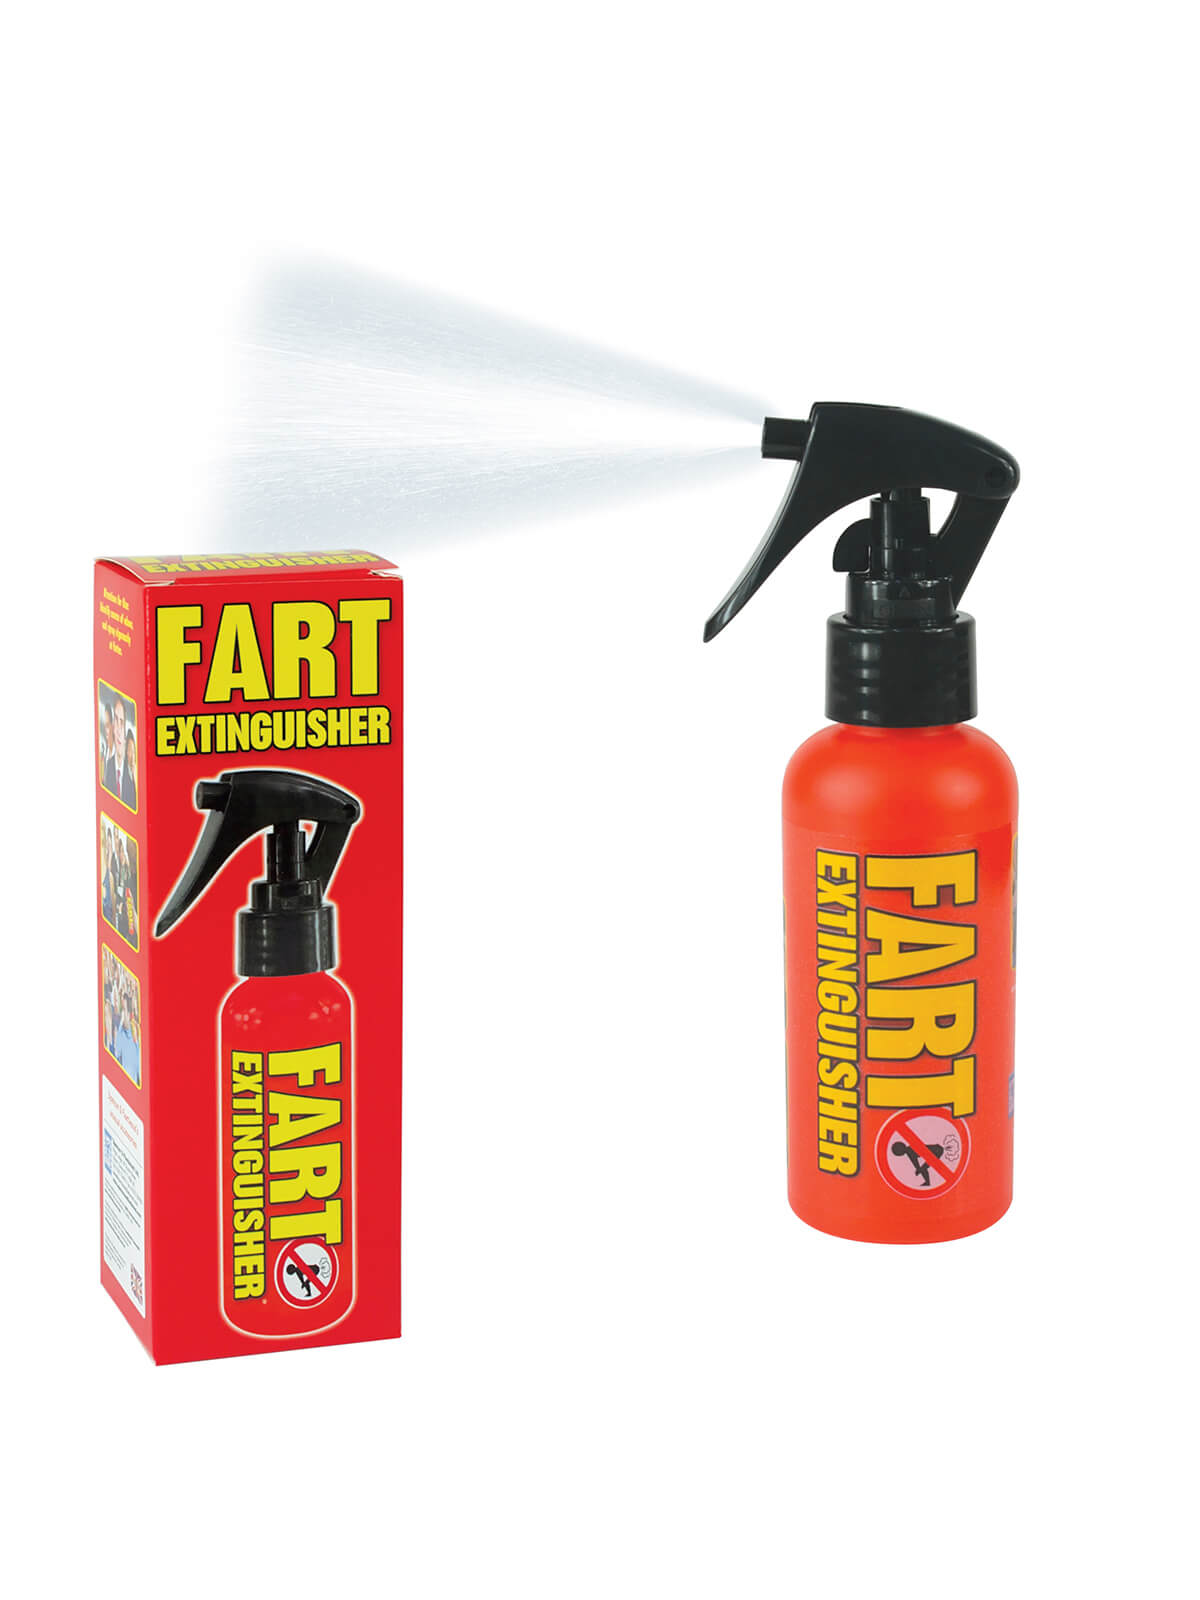 FartExtinguisher Air Freshener